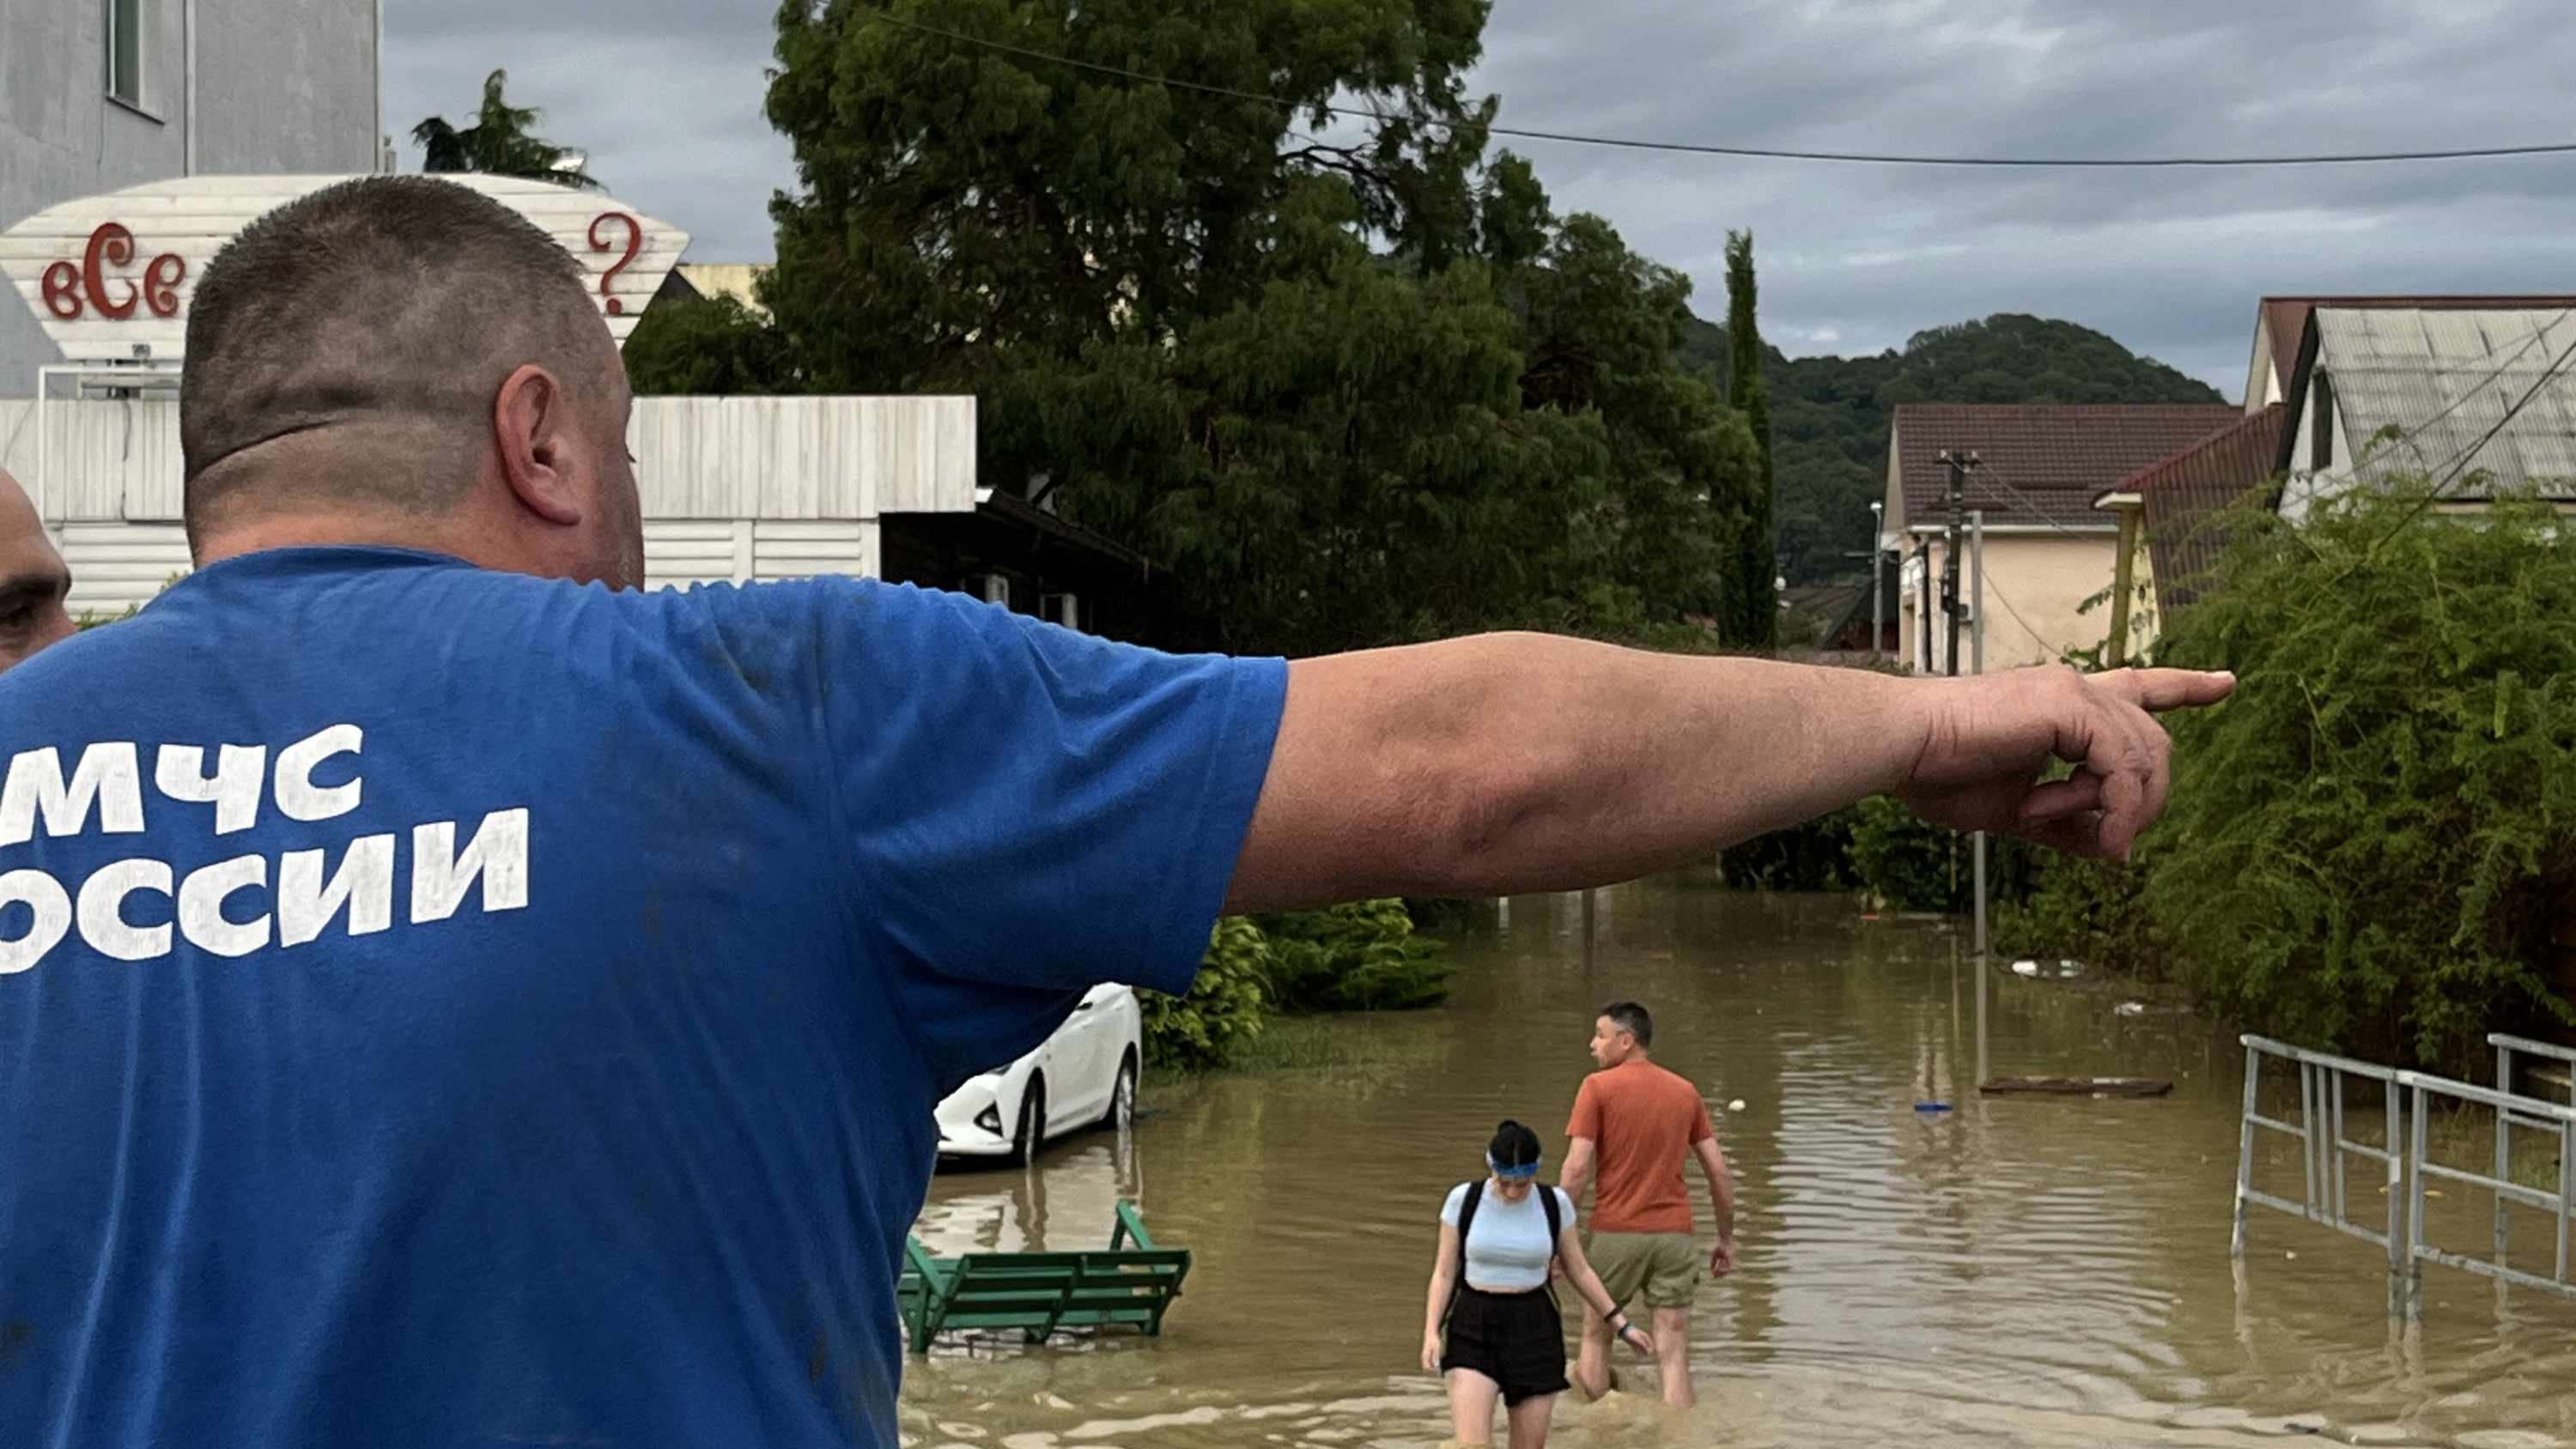 Мэрия Сочи предупредила о возможном резком подъеме рек из-за непогоды